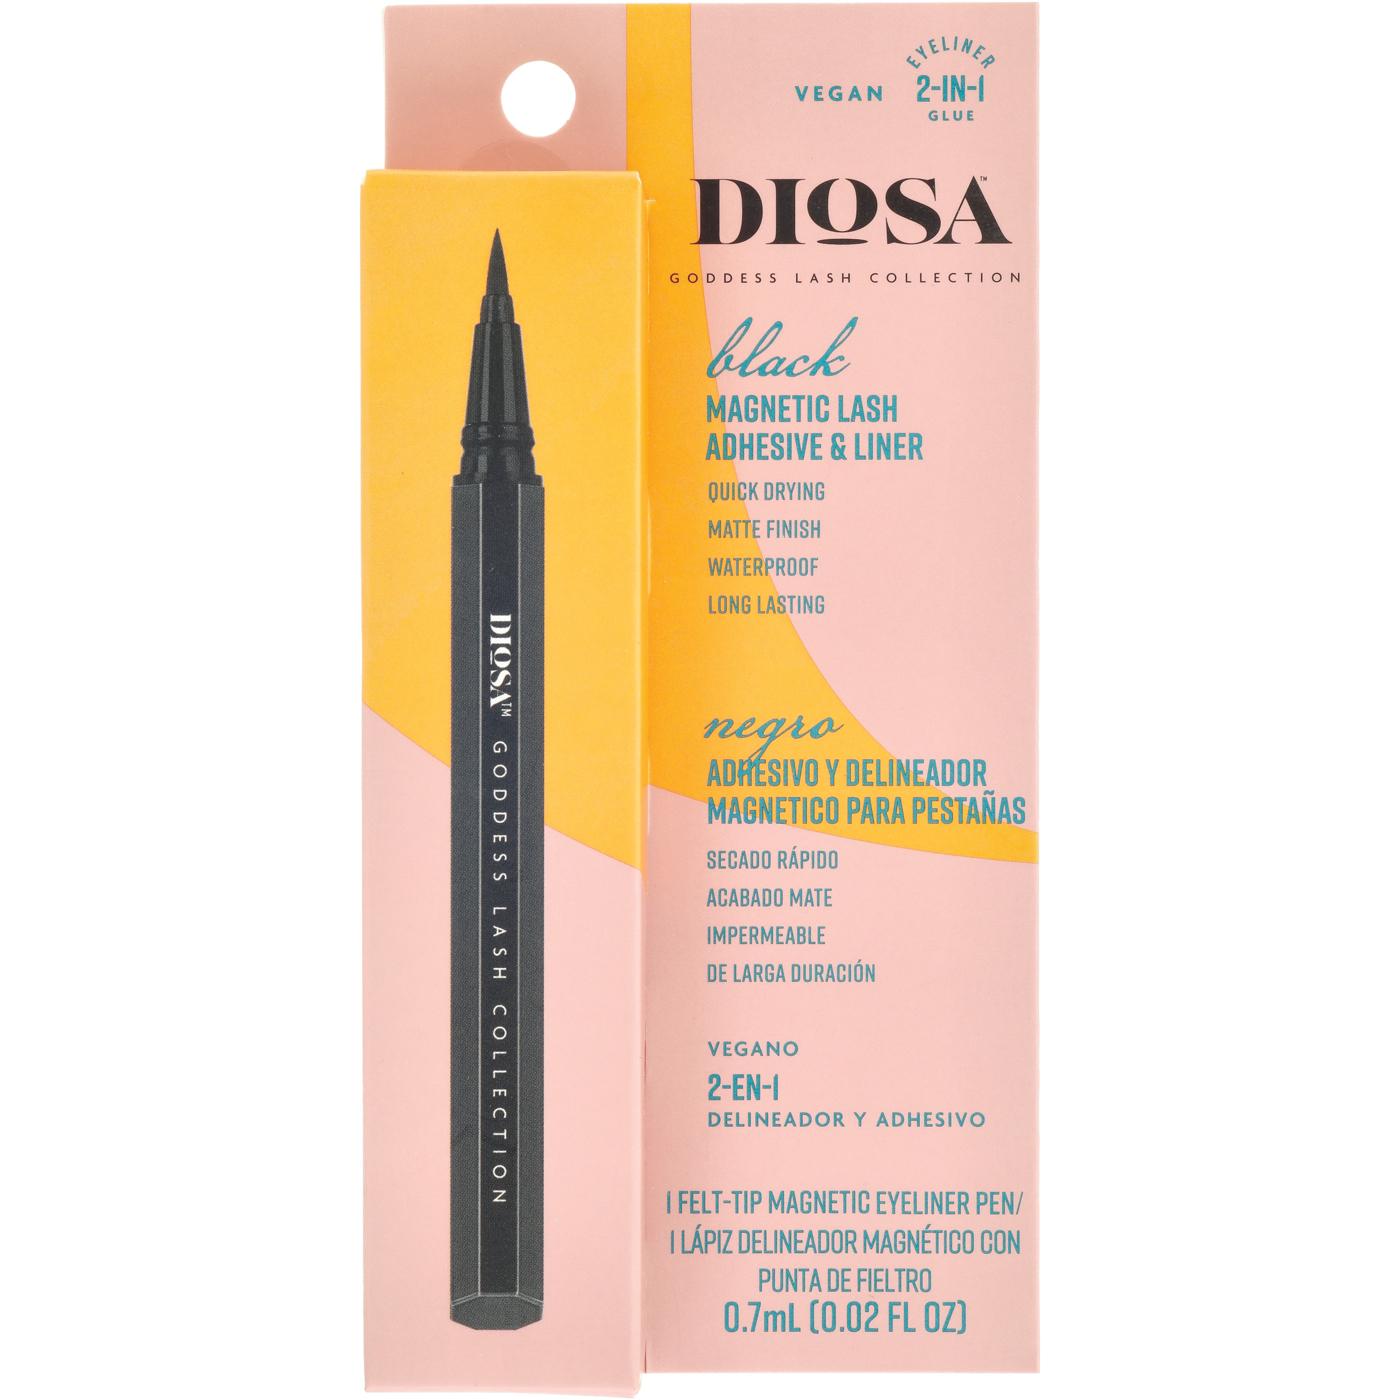 Diosa Felt-Tip Magnetic Eyeliner Pen - Black; image 1 of 5